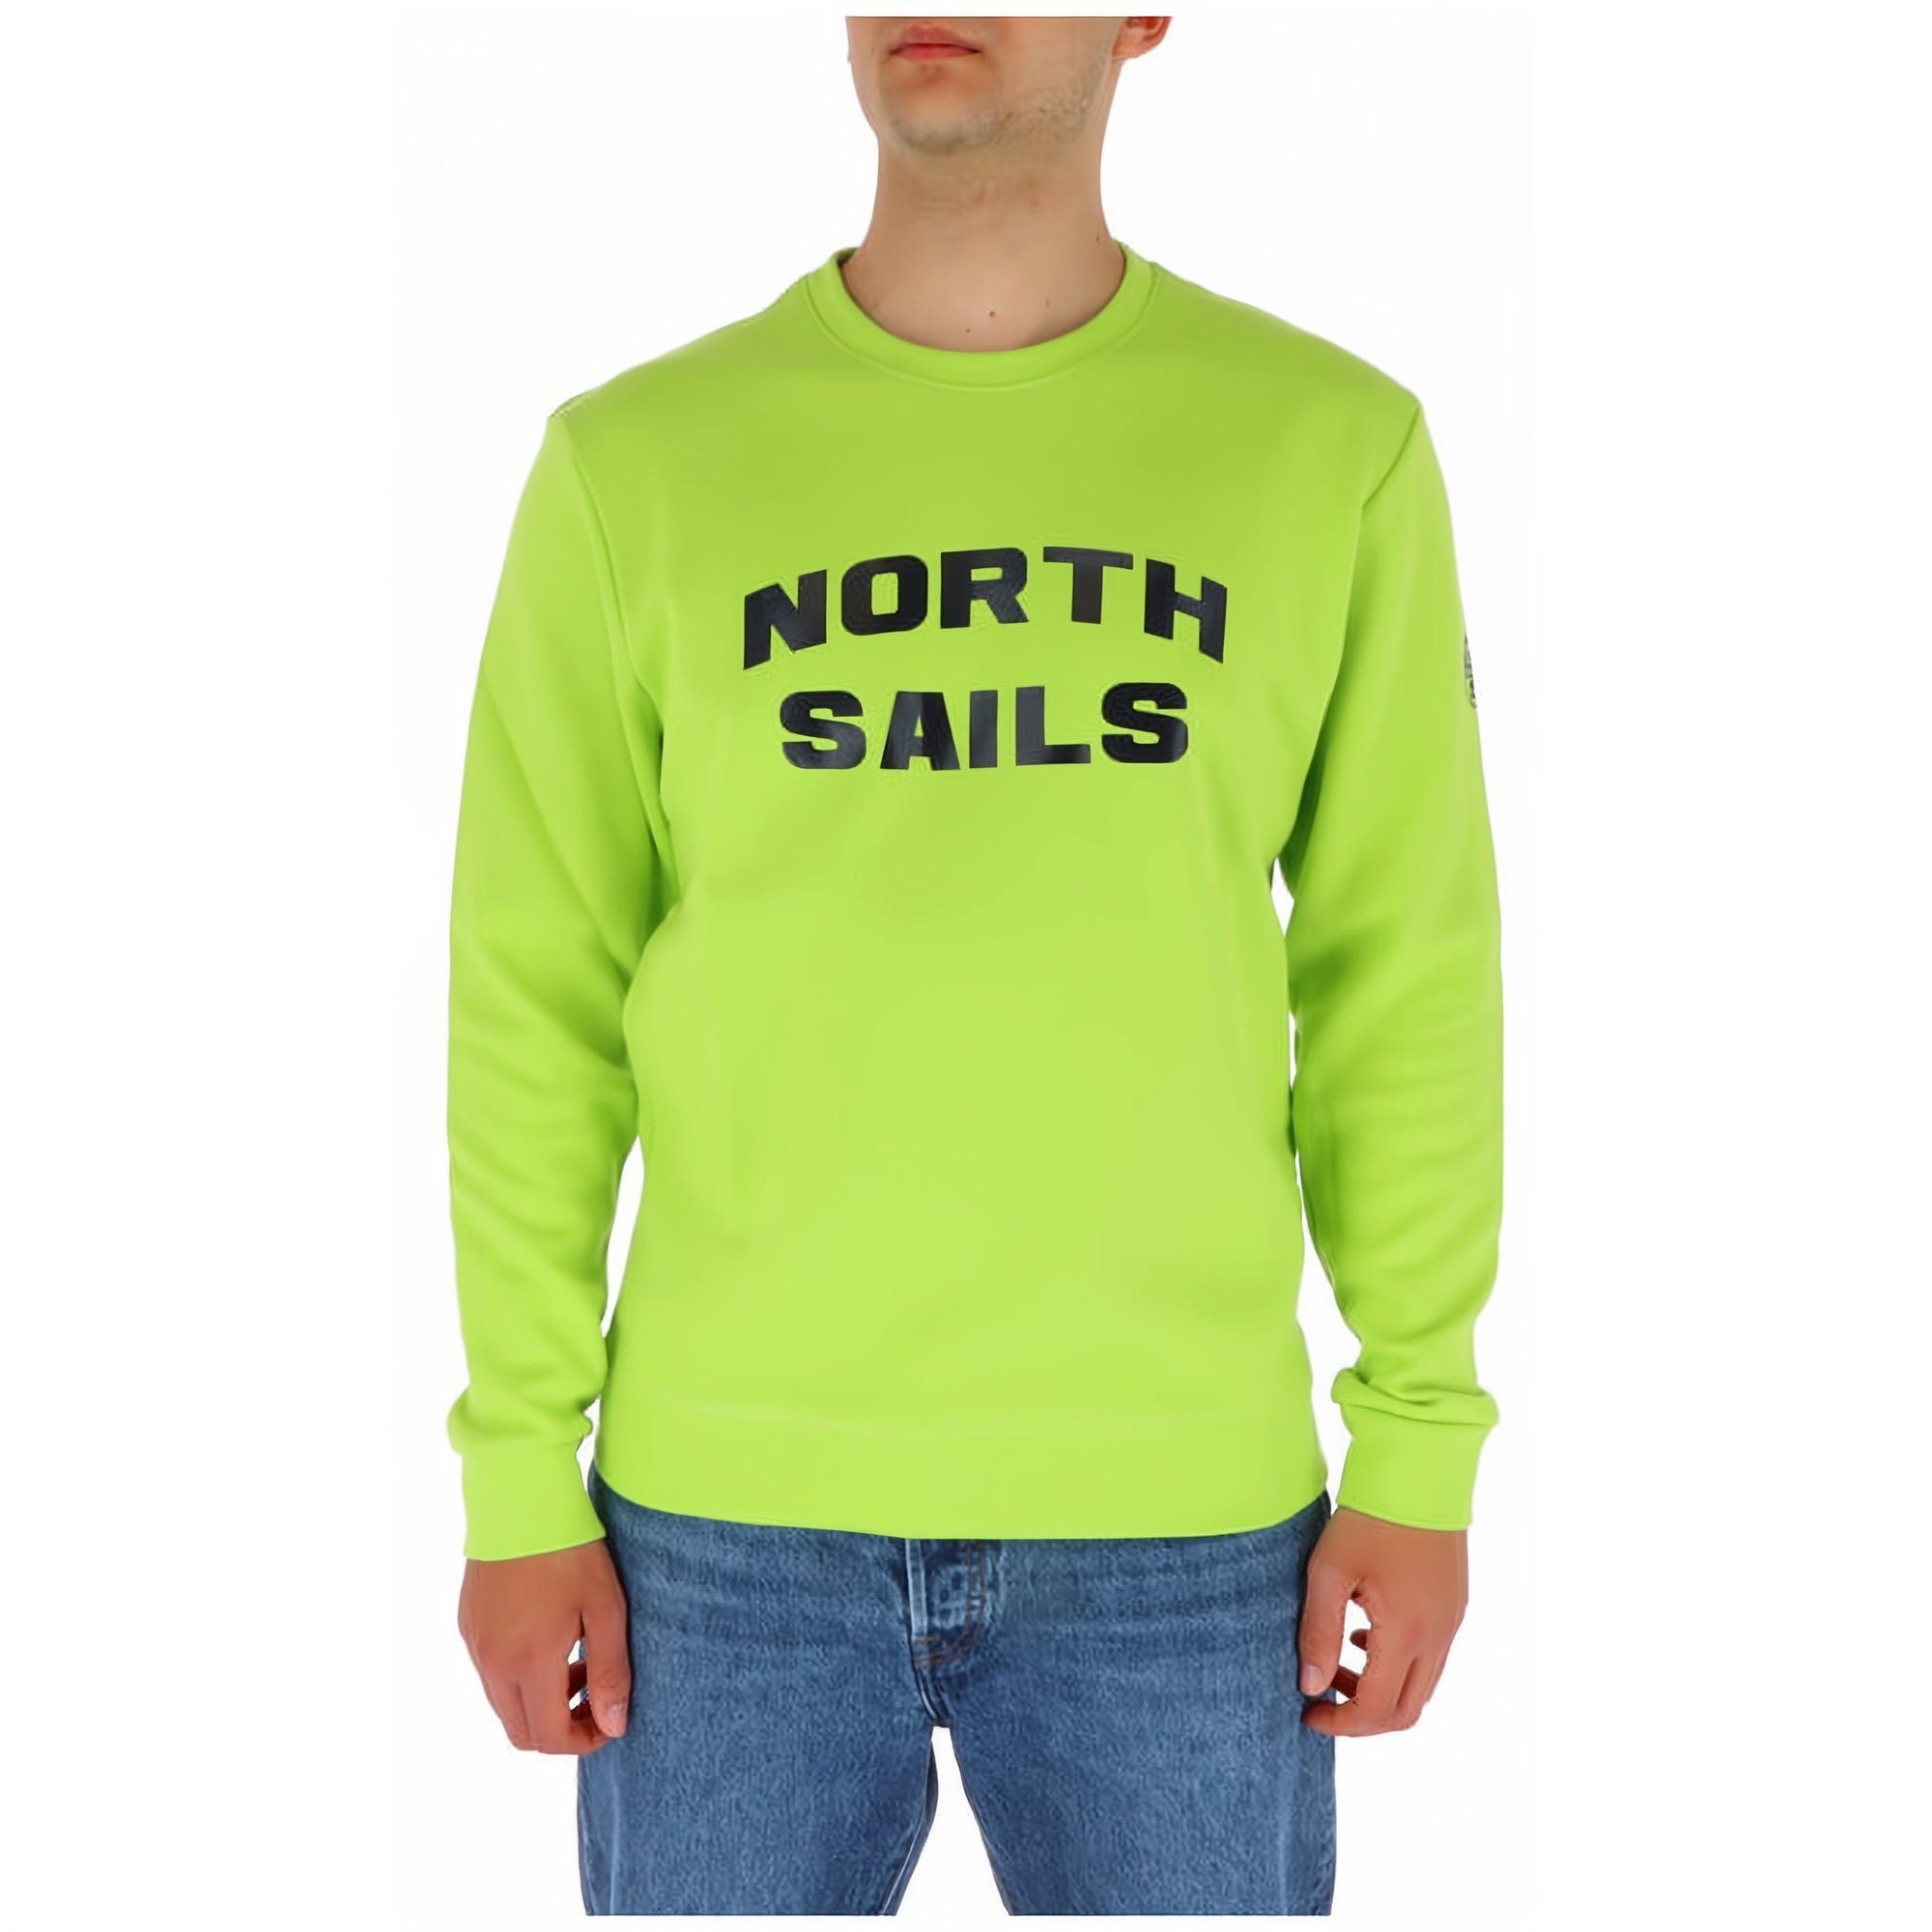 North Sails Sweatshirt modische Herren Sweatshirt Jetzt bestellen, und den Komfort von, North Sails genießen!